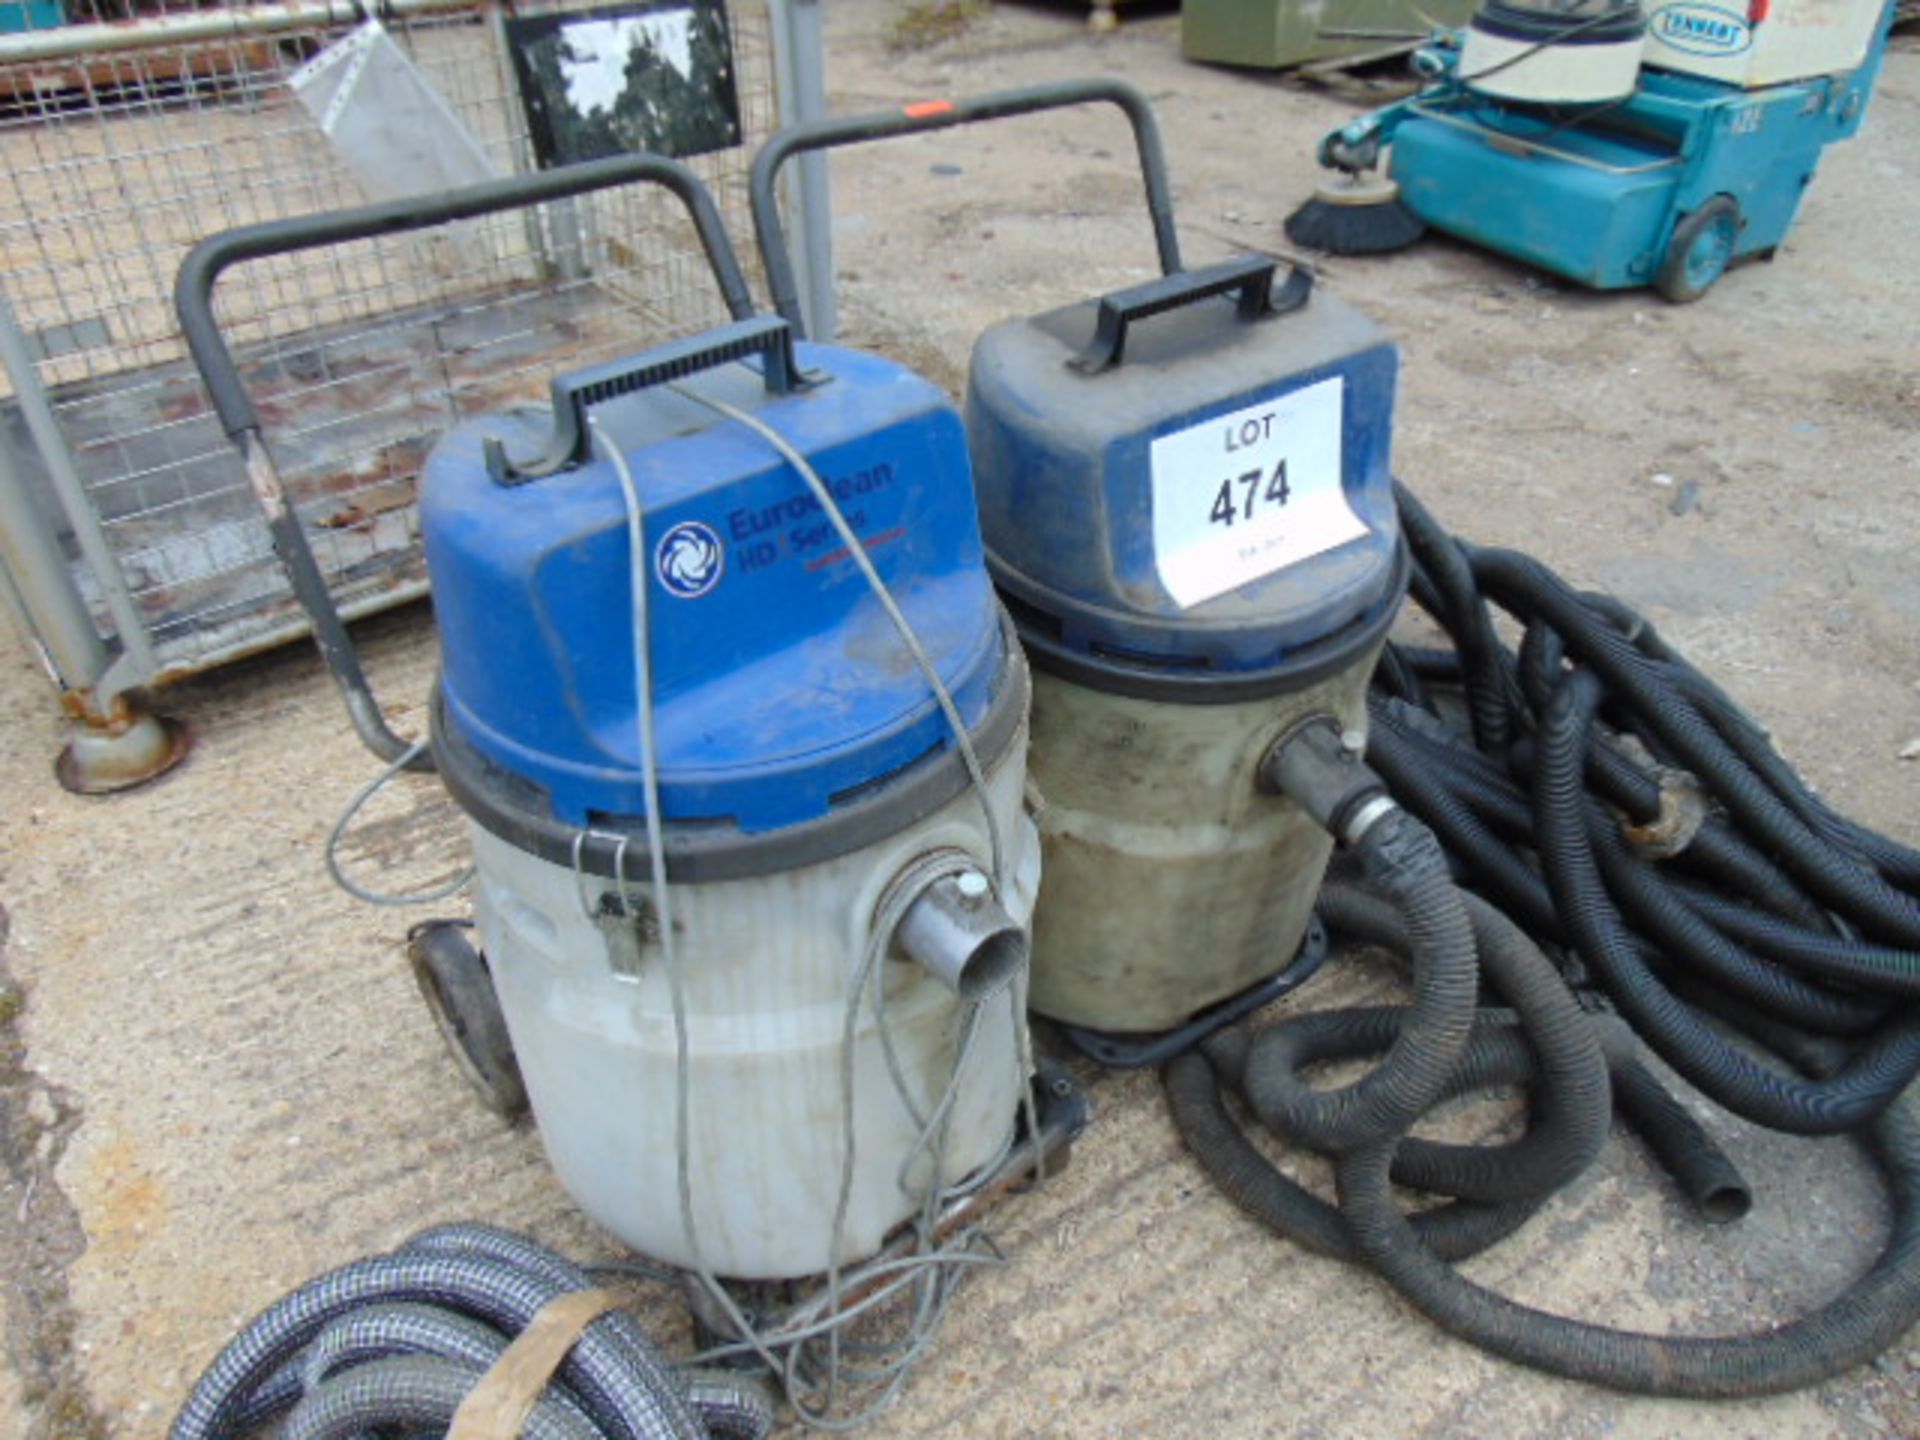 2 x Nilfisk Hipower Industrial Vacuum Cleaners - Image 2 of 5